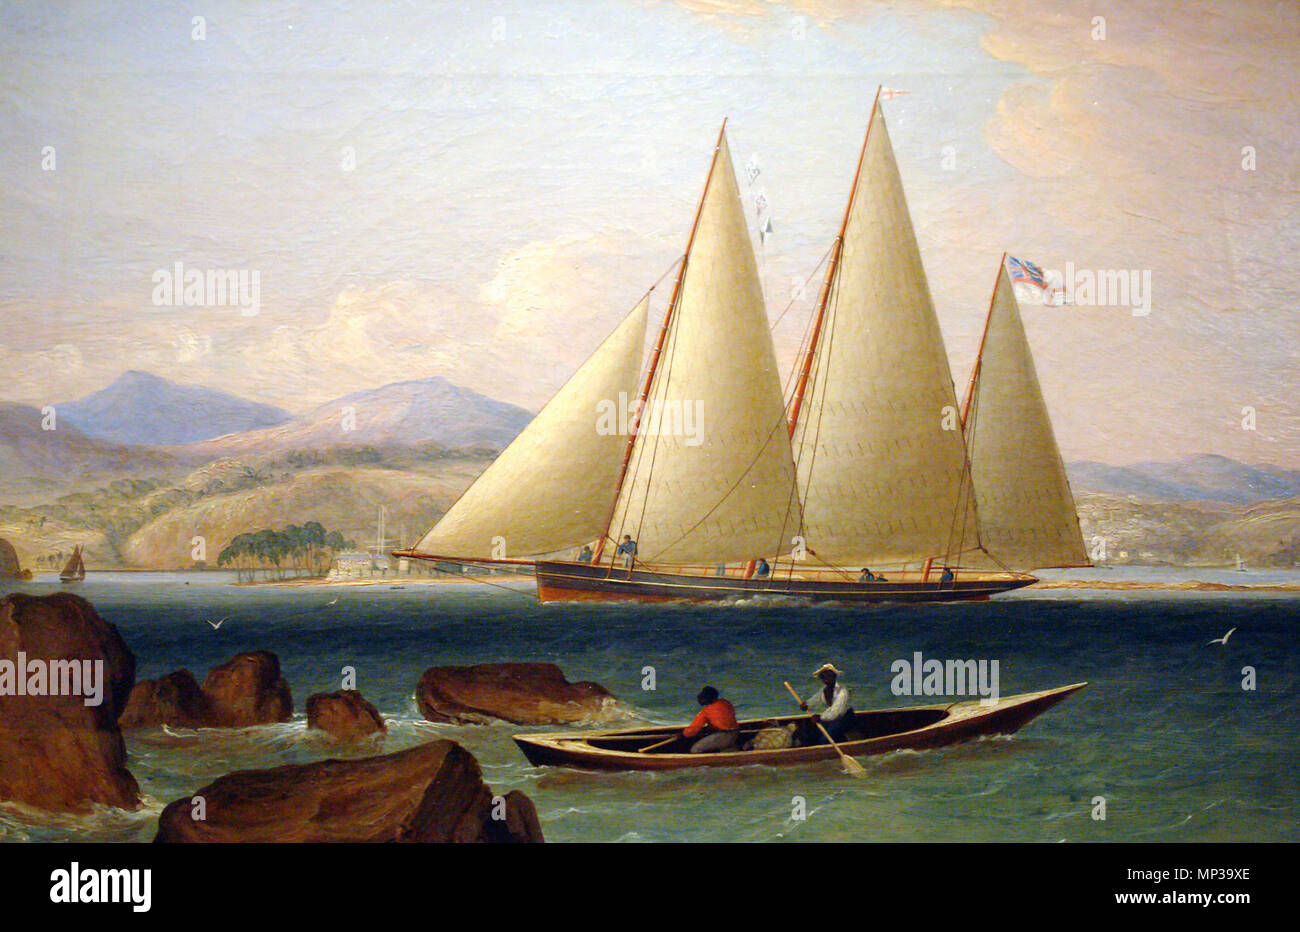 Des Bermudes une corvette de guerre, ou Ballyhou goélette . Un bermuda sloop de la Royal Navy, l'entrée au port dans les Antilles. Début dans les années 1790, la marine a obtenu un grand nombre de ces navires, des Bermudes certains commandés directement auprès de constructeurs dans les Bermudes, avec d'autres personnes ont acheté à partir d'échanges commerciaux. Par exemple le plus remarquable était le HMS Pickle, qui a accueil nouvelles de la victoire à la bataille de Trafalgar. Les navires des Bermudes, qui pourrait avoir d'un à trois mâts, étaient employés à la première pour contrer la menace de corsaires français dans les eaux de l'ouest, et plus tard est devenu la norme des conseils vesse Banque D'Images